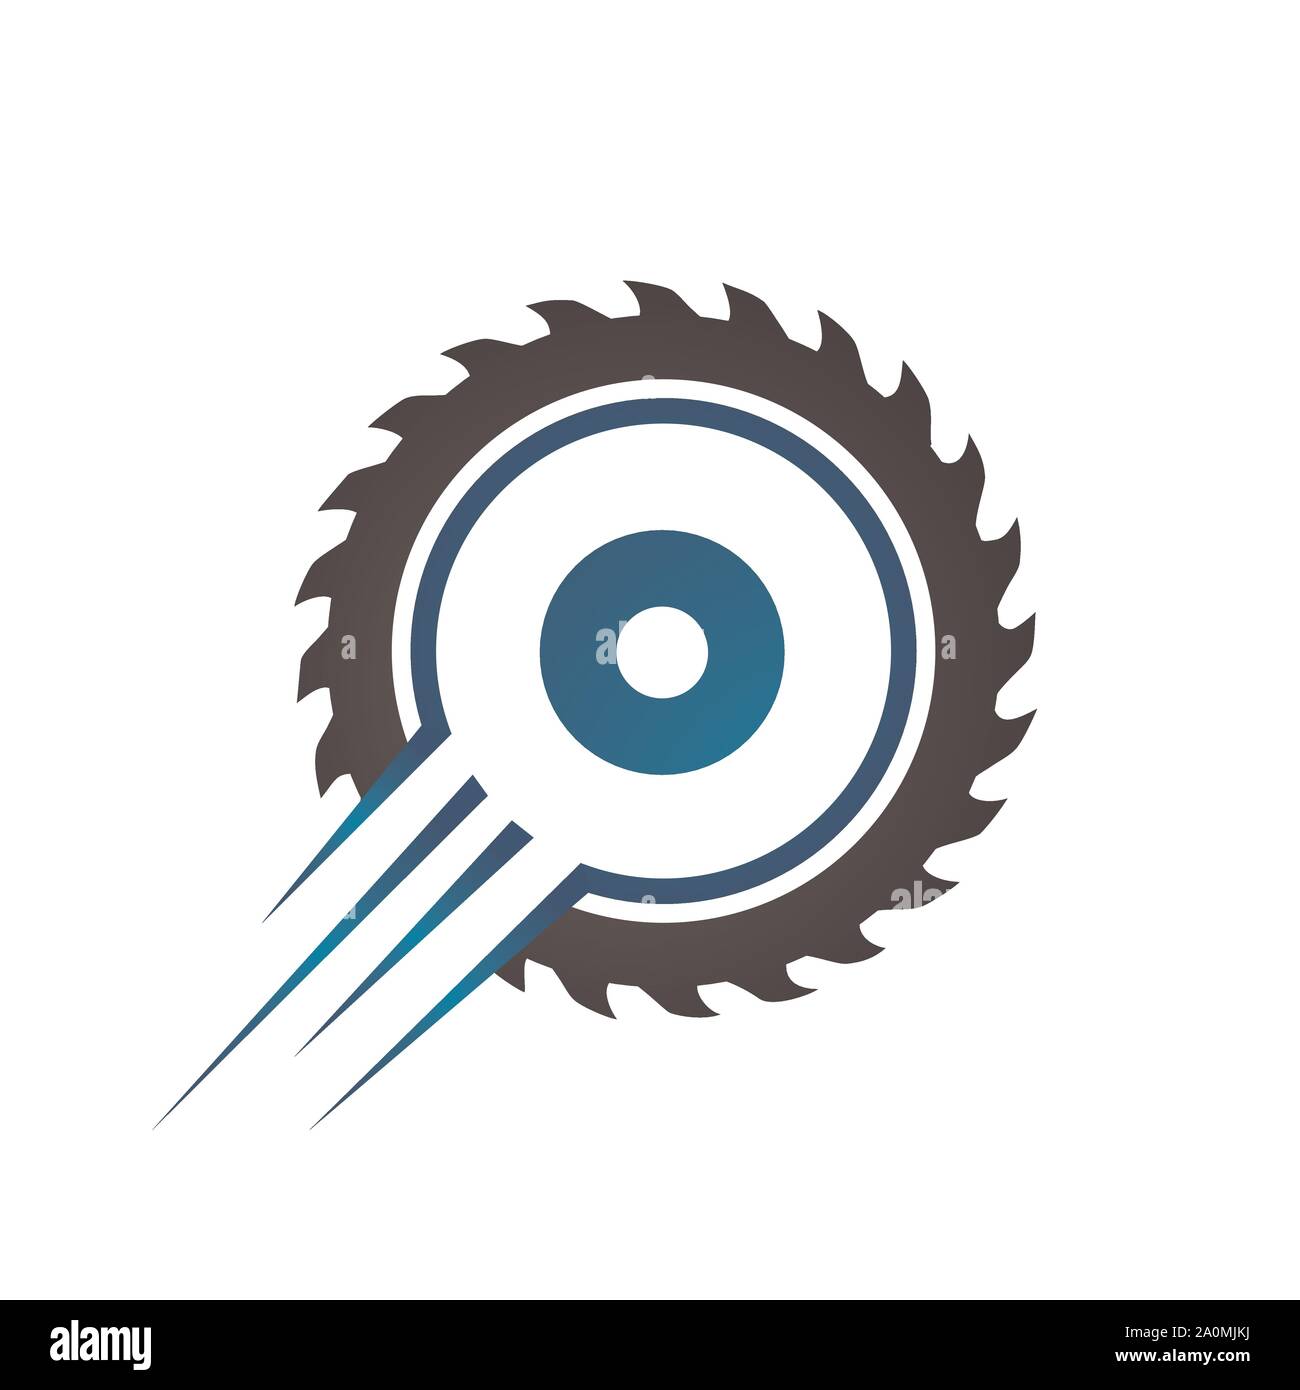 circular saw blade logo design template vector illustration Stock Vector